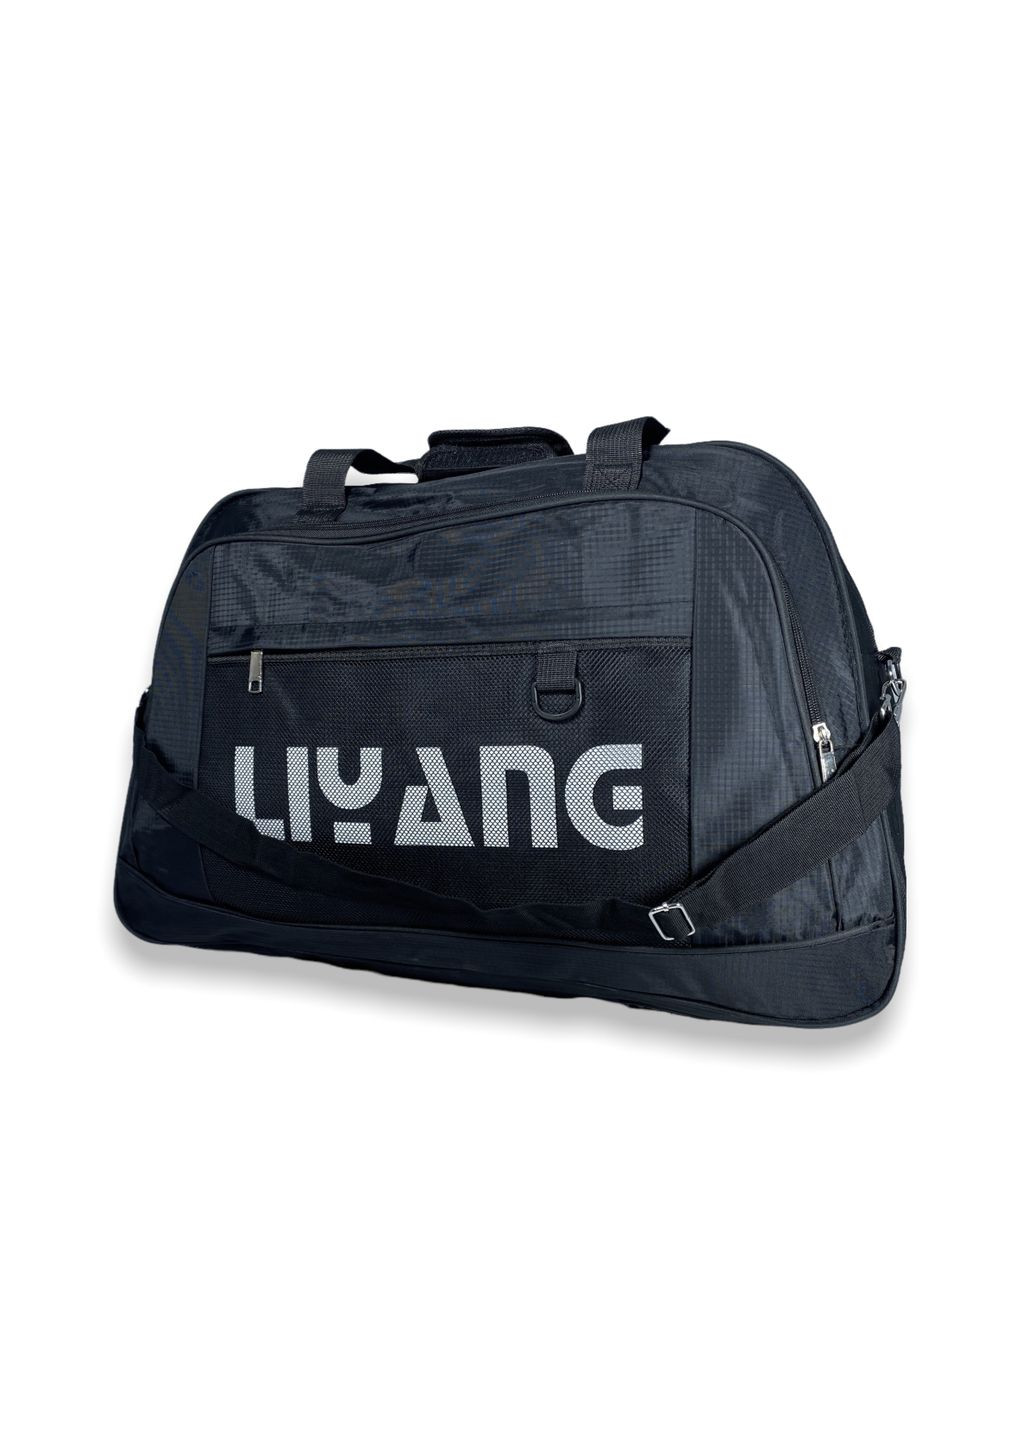 Дорожня сумка 52 л одне відділення додаткова кишеня розмір: 60*40*22 см чорна Liyang (266912154)